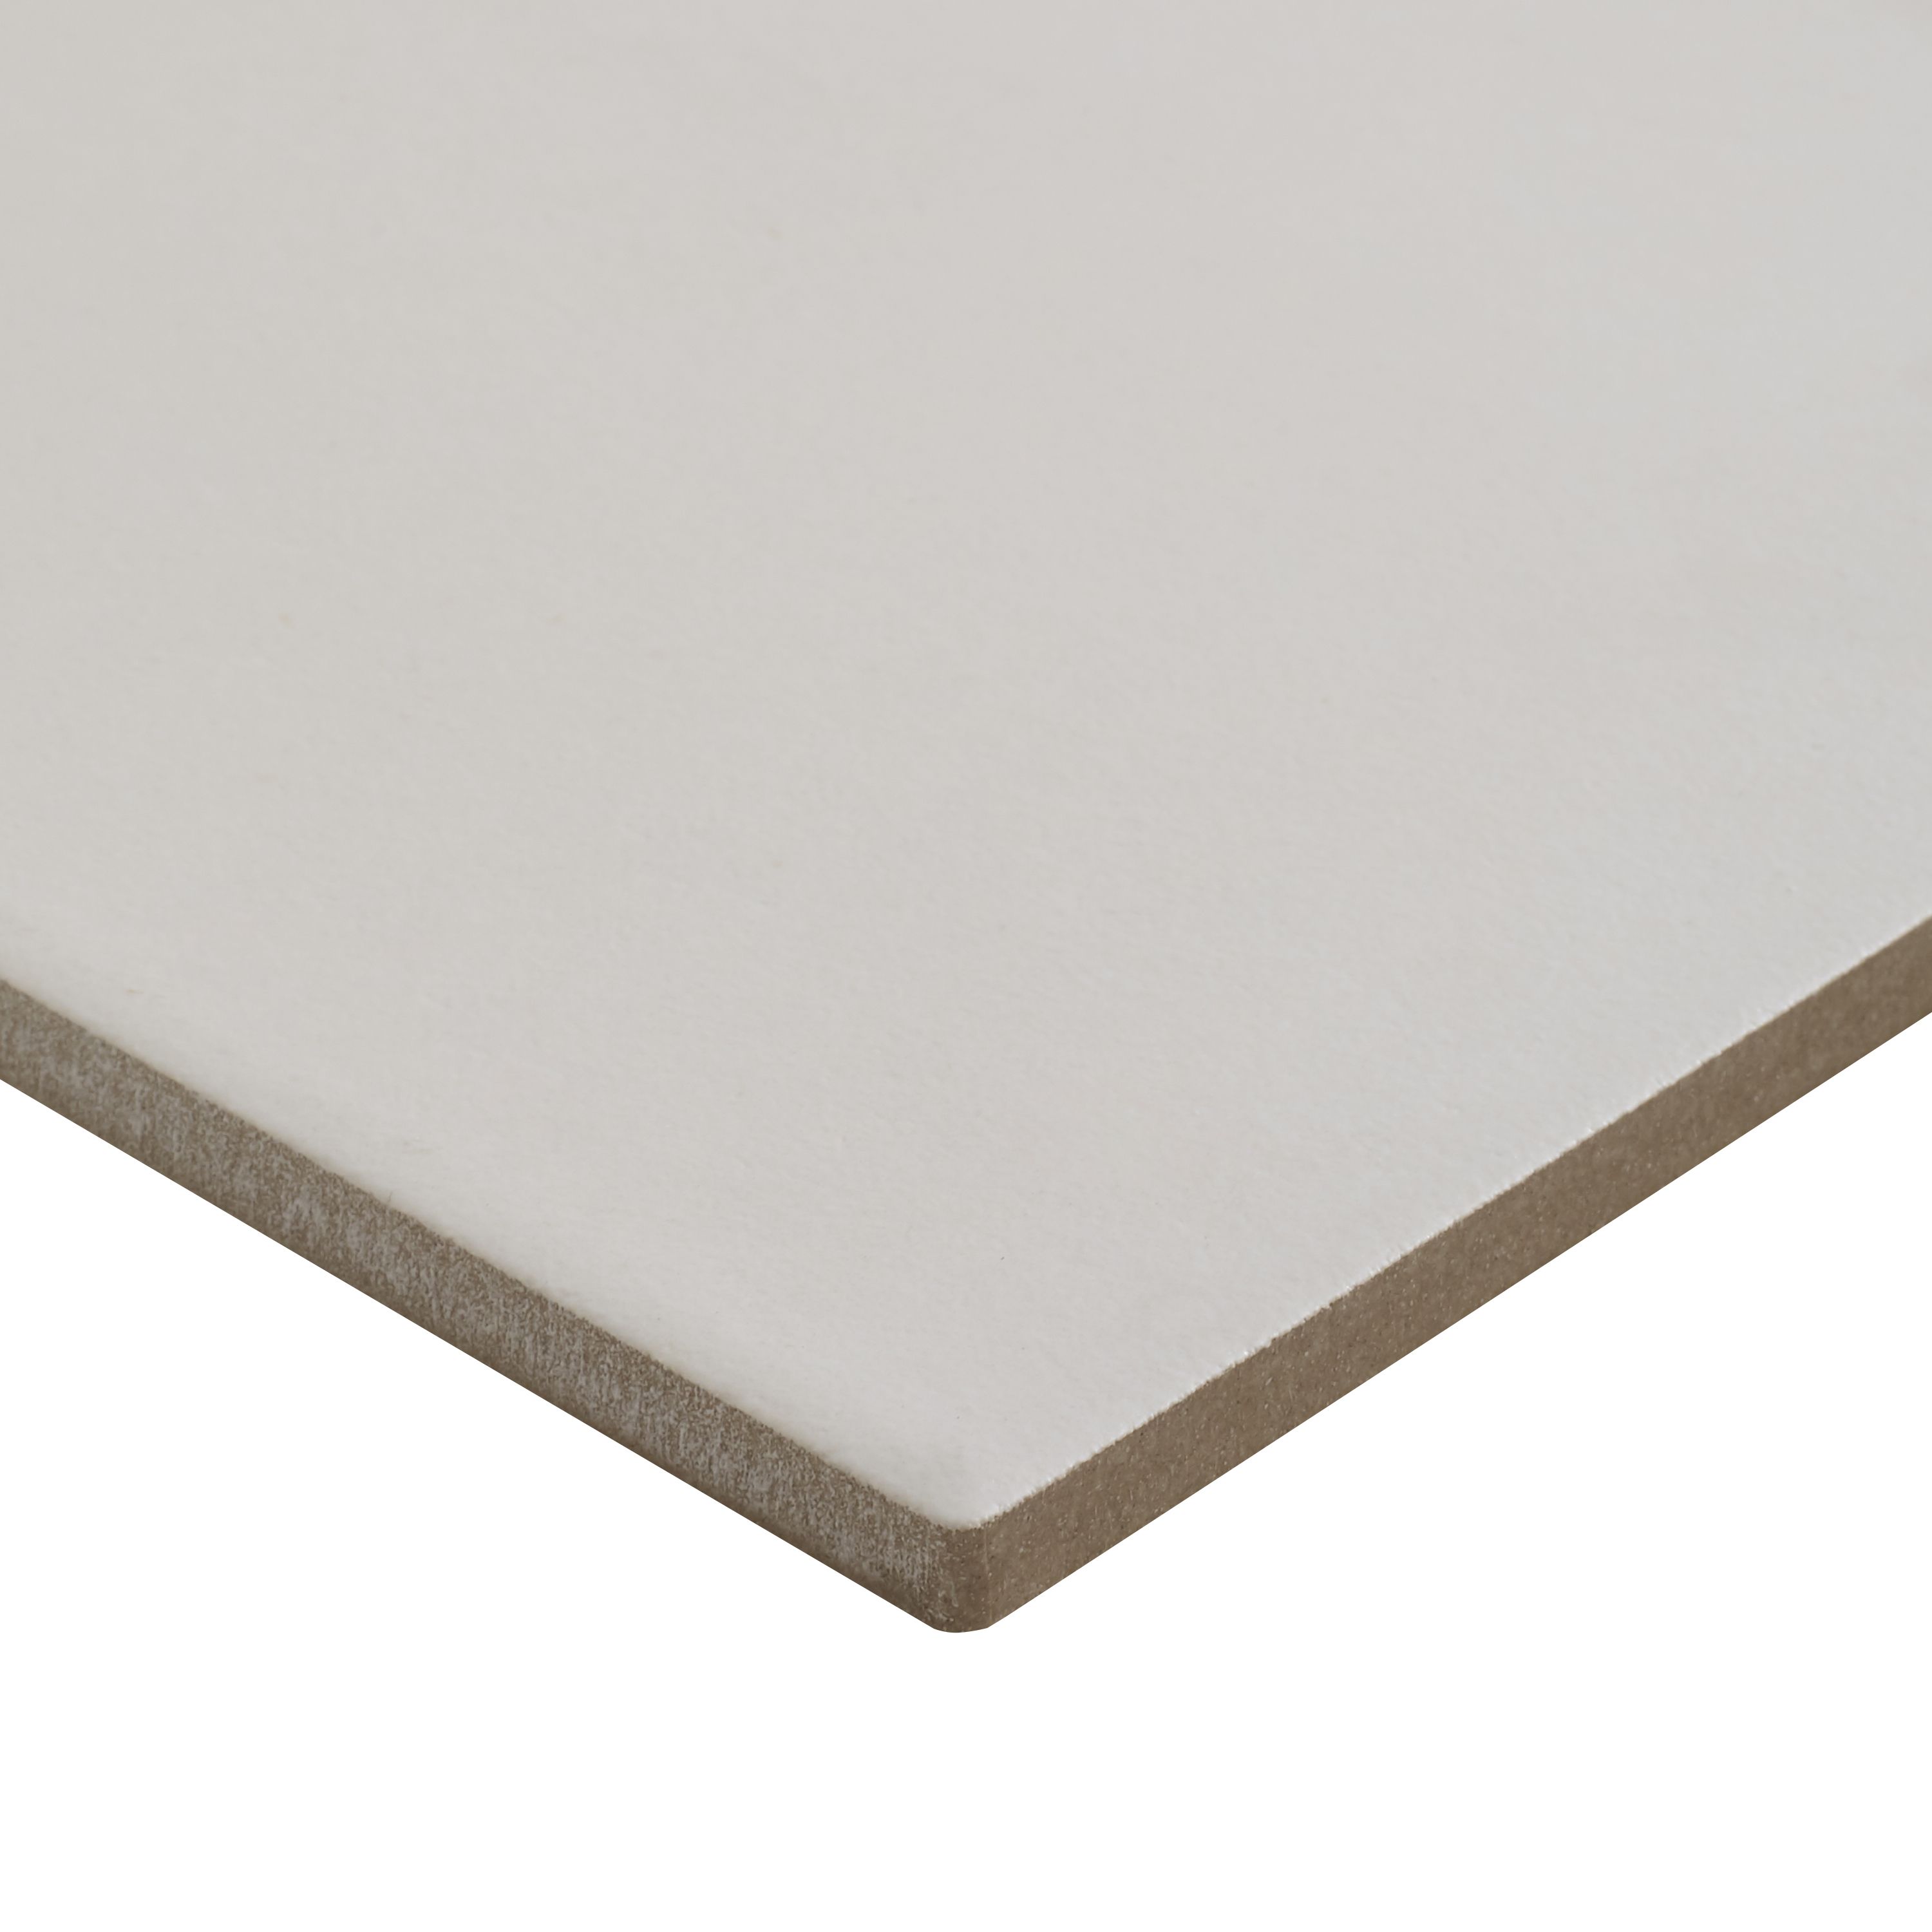 Colours Konkrete White Matt Porcelain Wall & floor Tile Sample